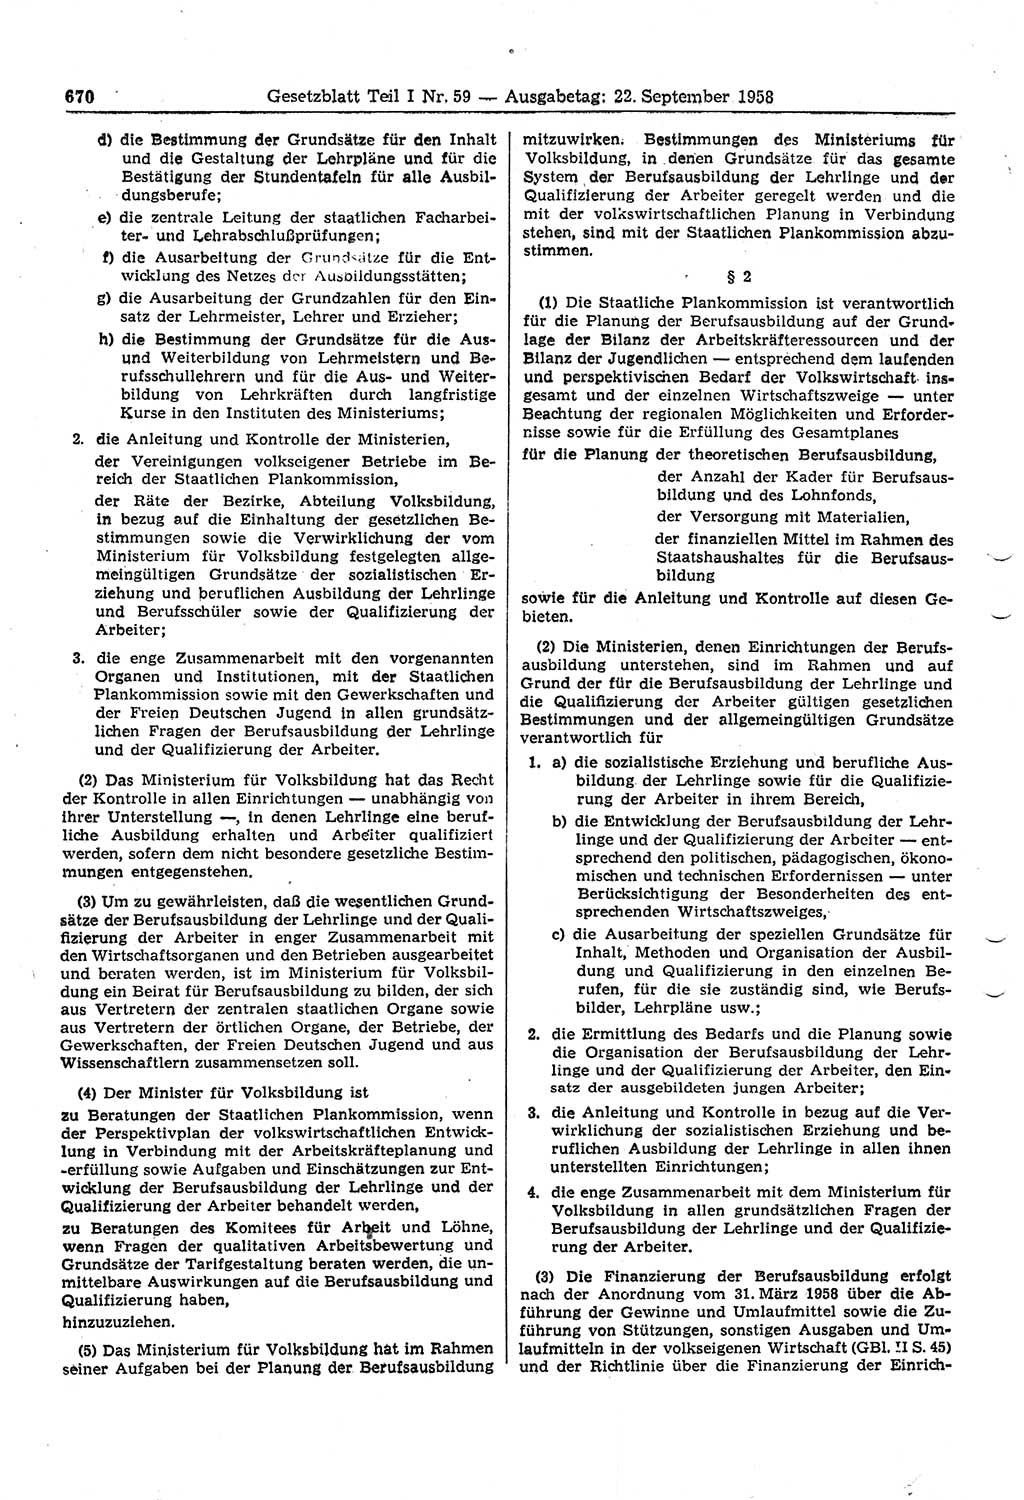 Gesetzblatt (GBl.) der Deutschen Demokratischen Republik (DDR) Teil Ⅰ 1958, Seite 670 (GBl. DDR Ⅰ 1958, S. 670)